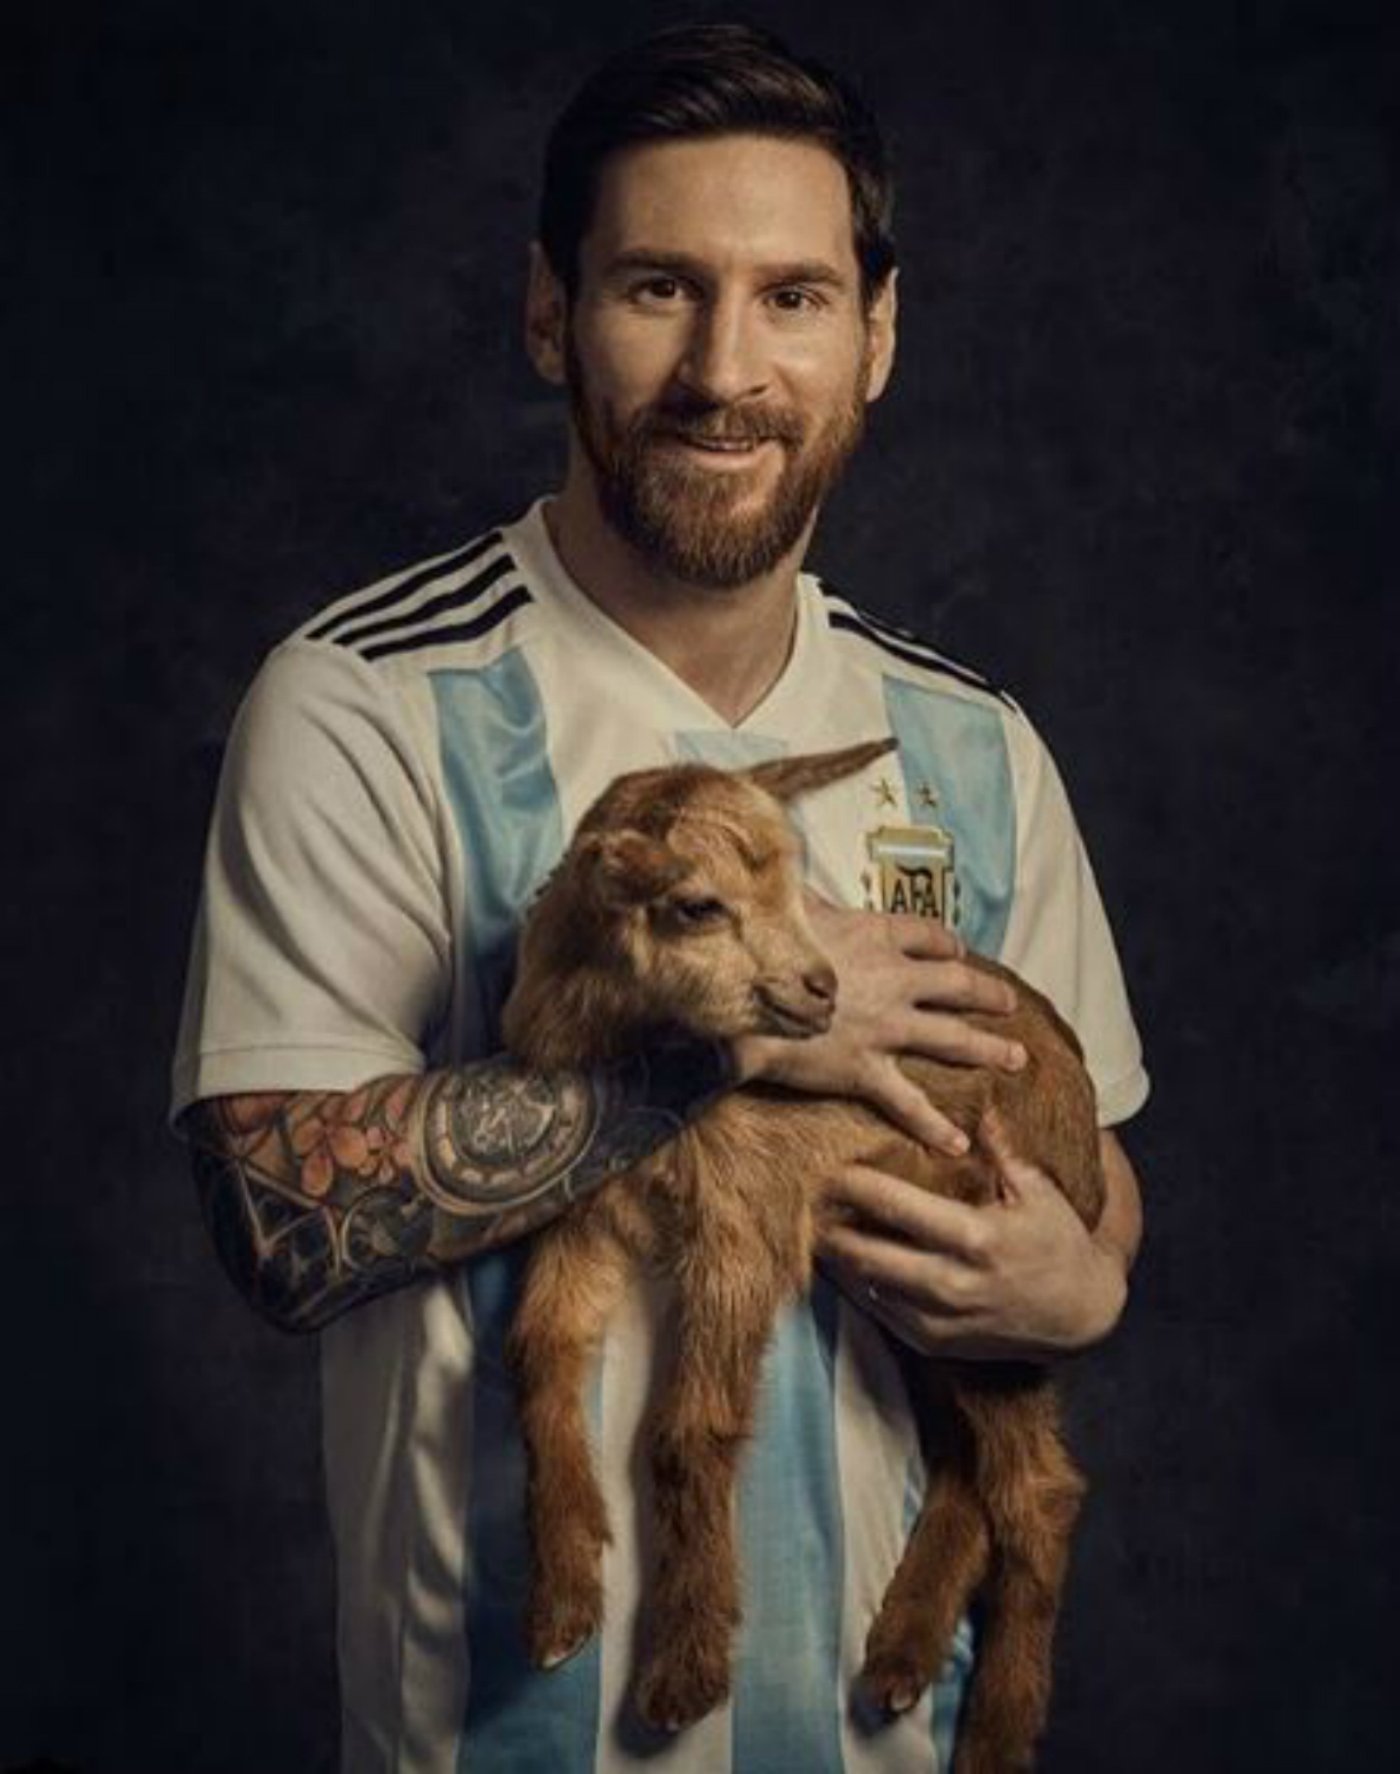 Per què una revista americana fotografia Messi al costat d'una cabra?